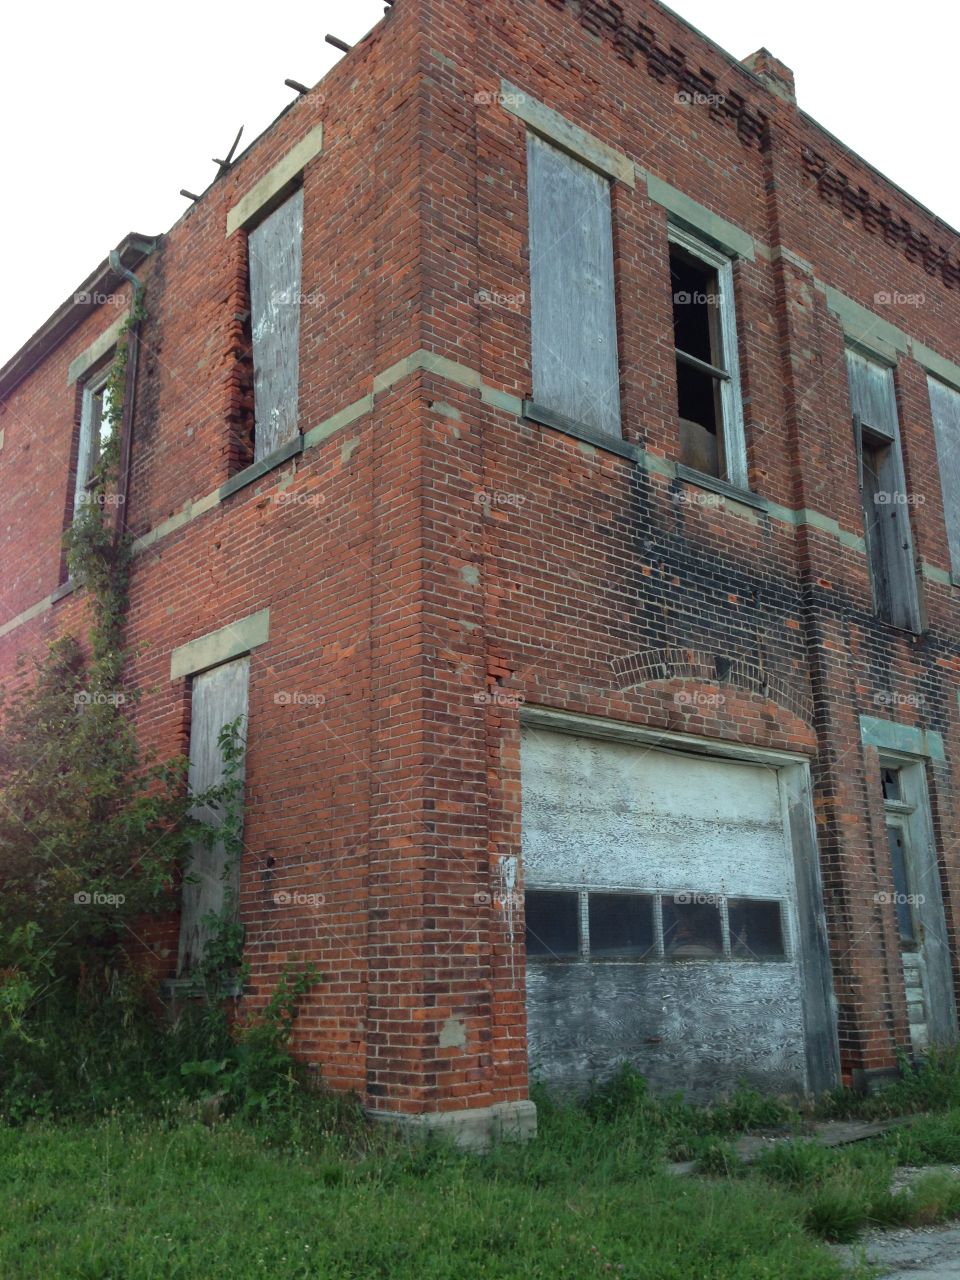 Abandoned building, Ohio 